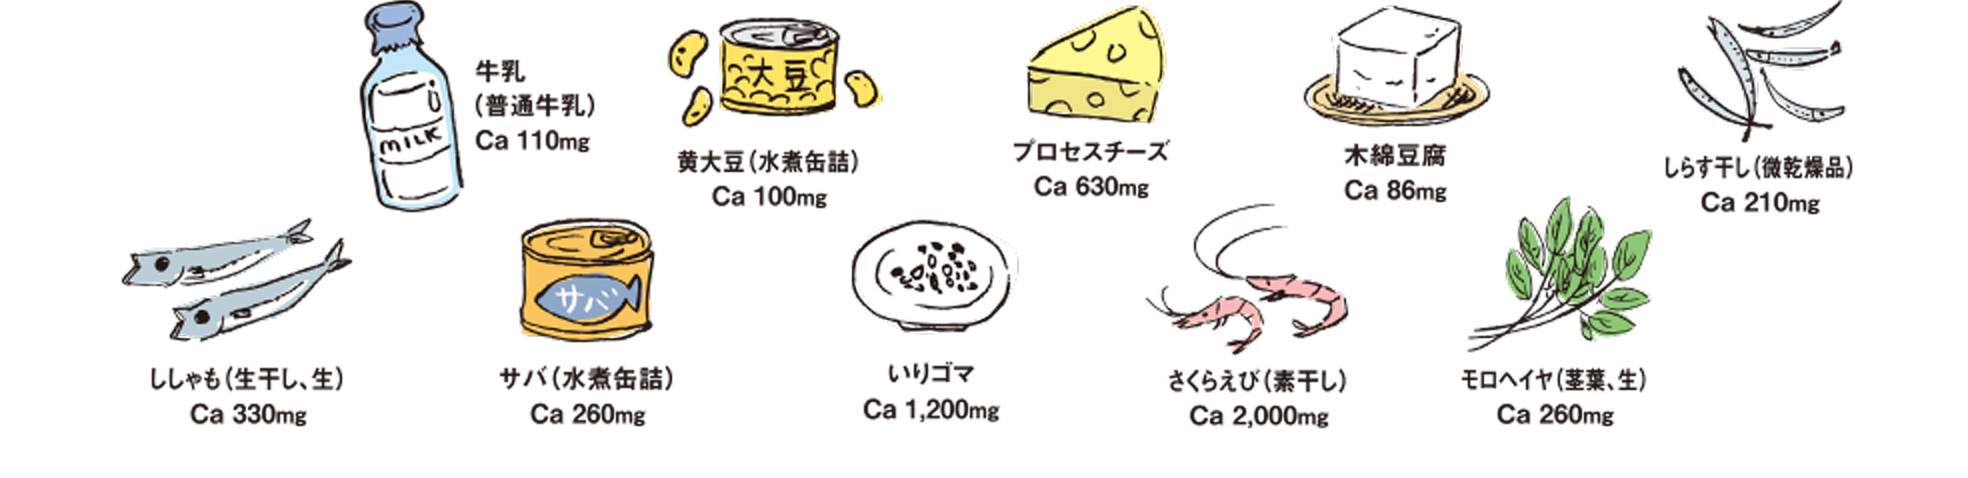 牛乳 黄大豆 プロセスチーズ 木綿豆腐 しらす干し(微乾燥品) ししゃも(生干し、生) サバ(水煮缶詰) いりゴマ さくらえび(煮干し) モロヘイヤ(茎葉、生))